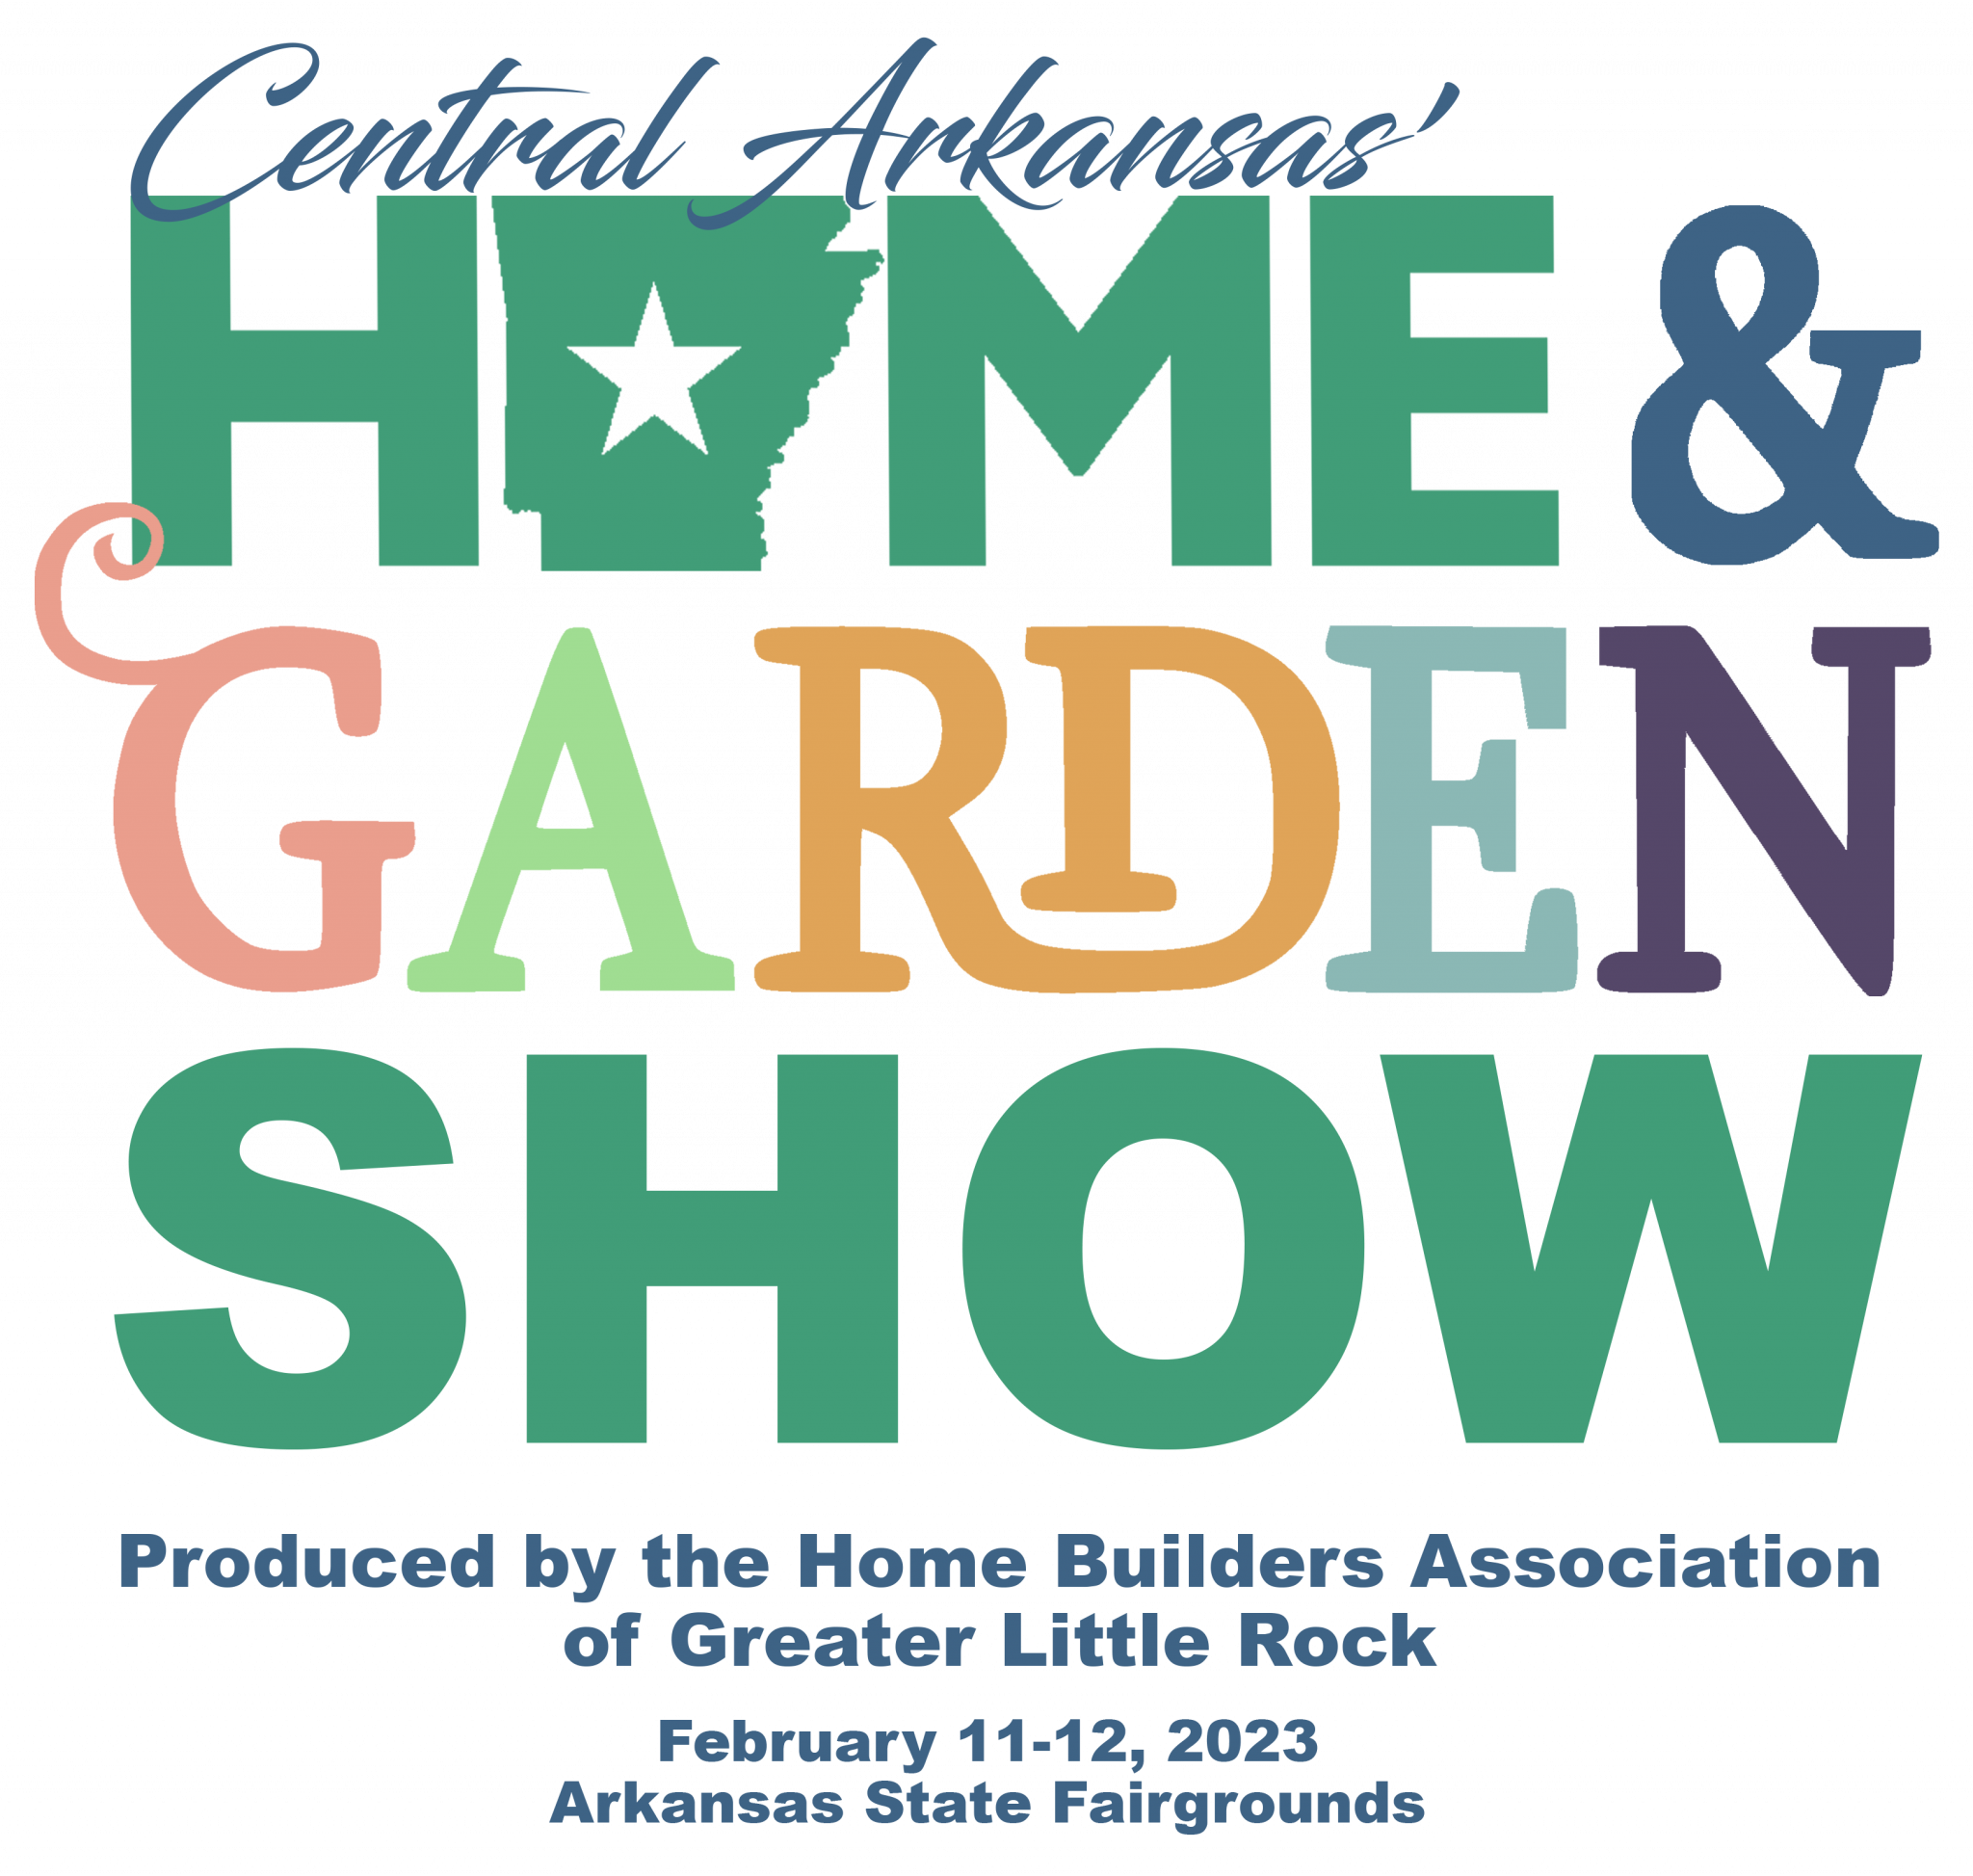 Central Arkansas Home & Garden Show